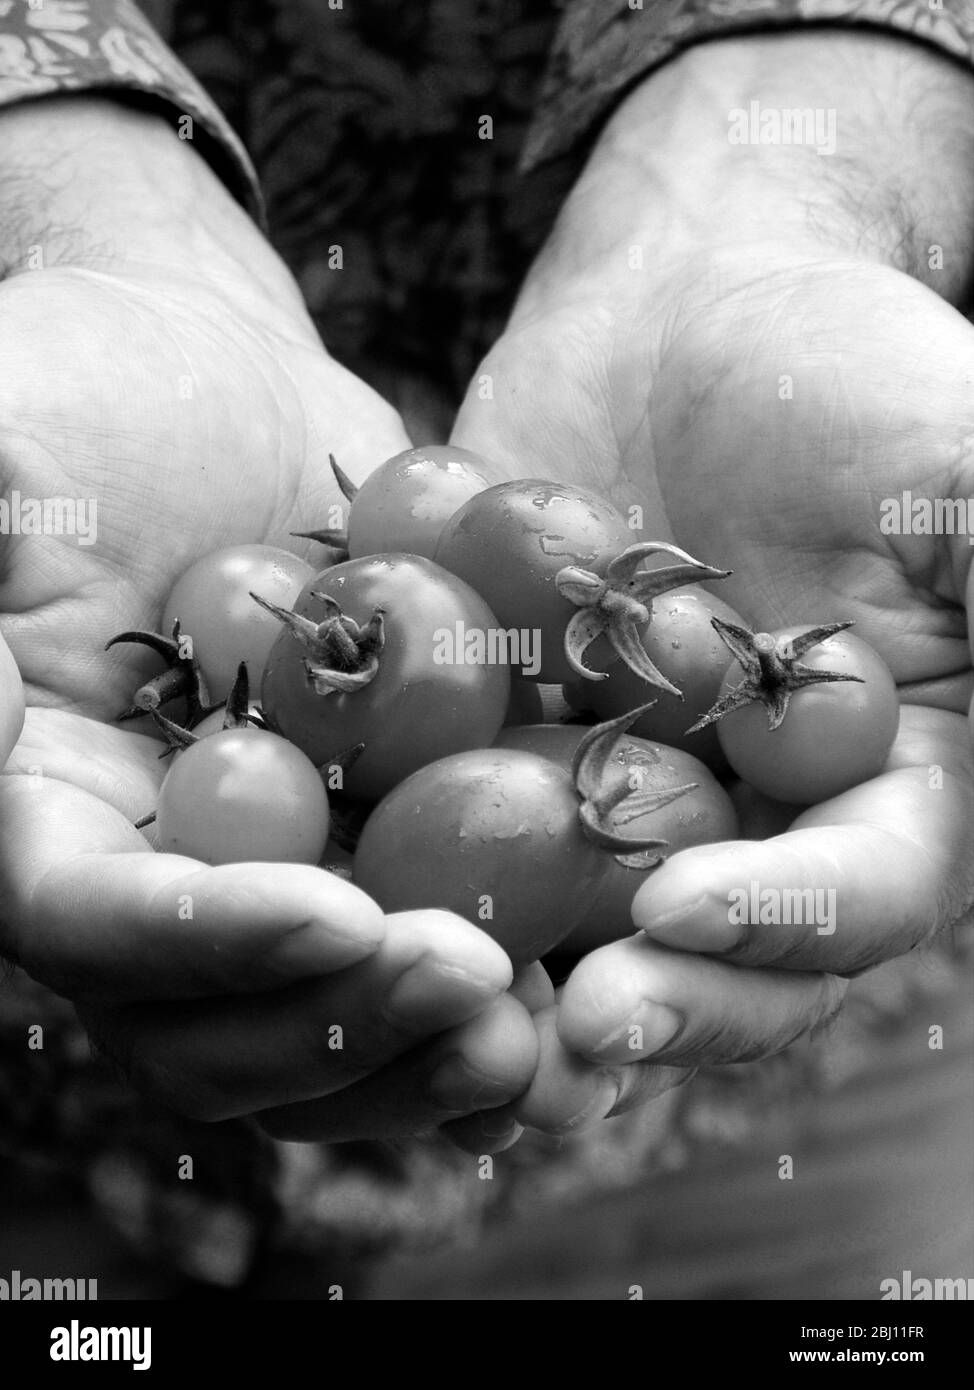 Pomodori coltivati in casa, appena raccolti tenuti in mano dell'uomo - Foto Stock